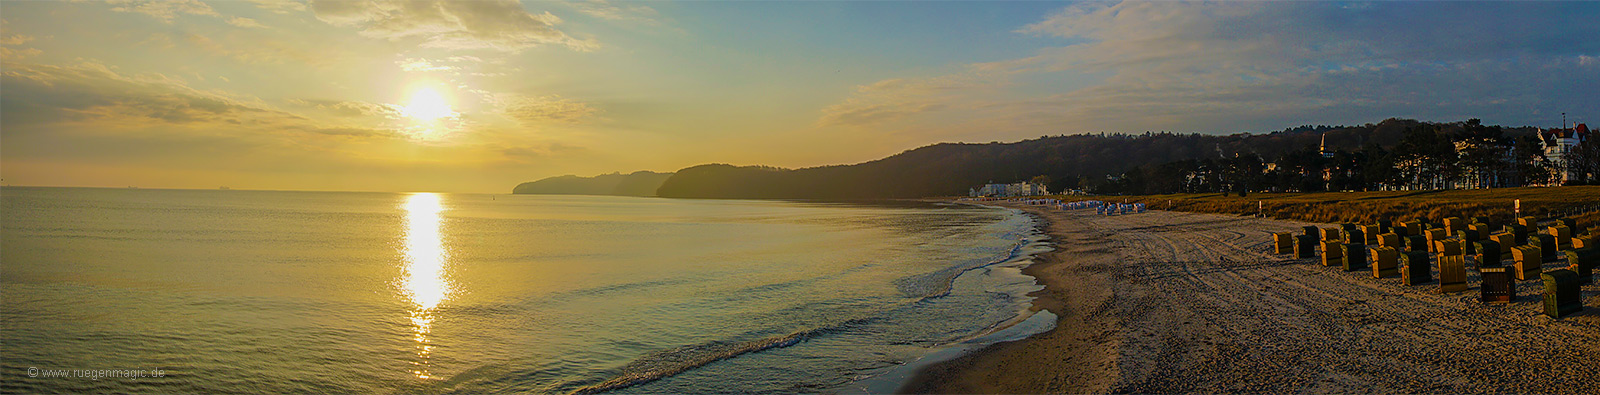 Morgendliches Panorama der Binzer Bucht im April